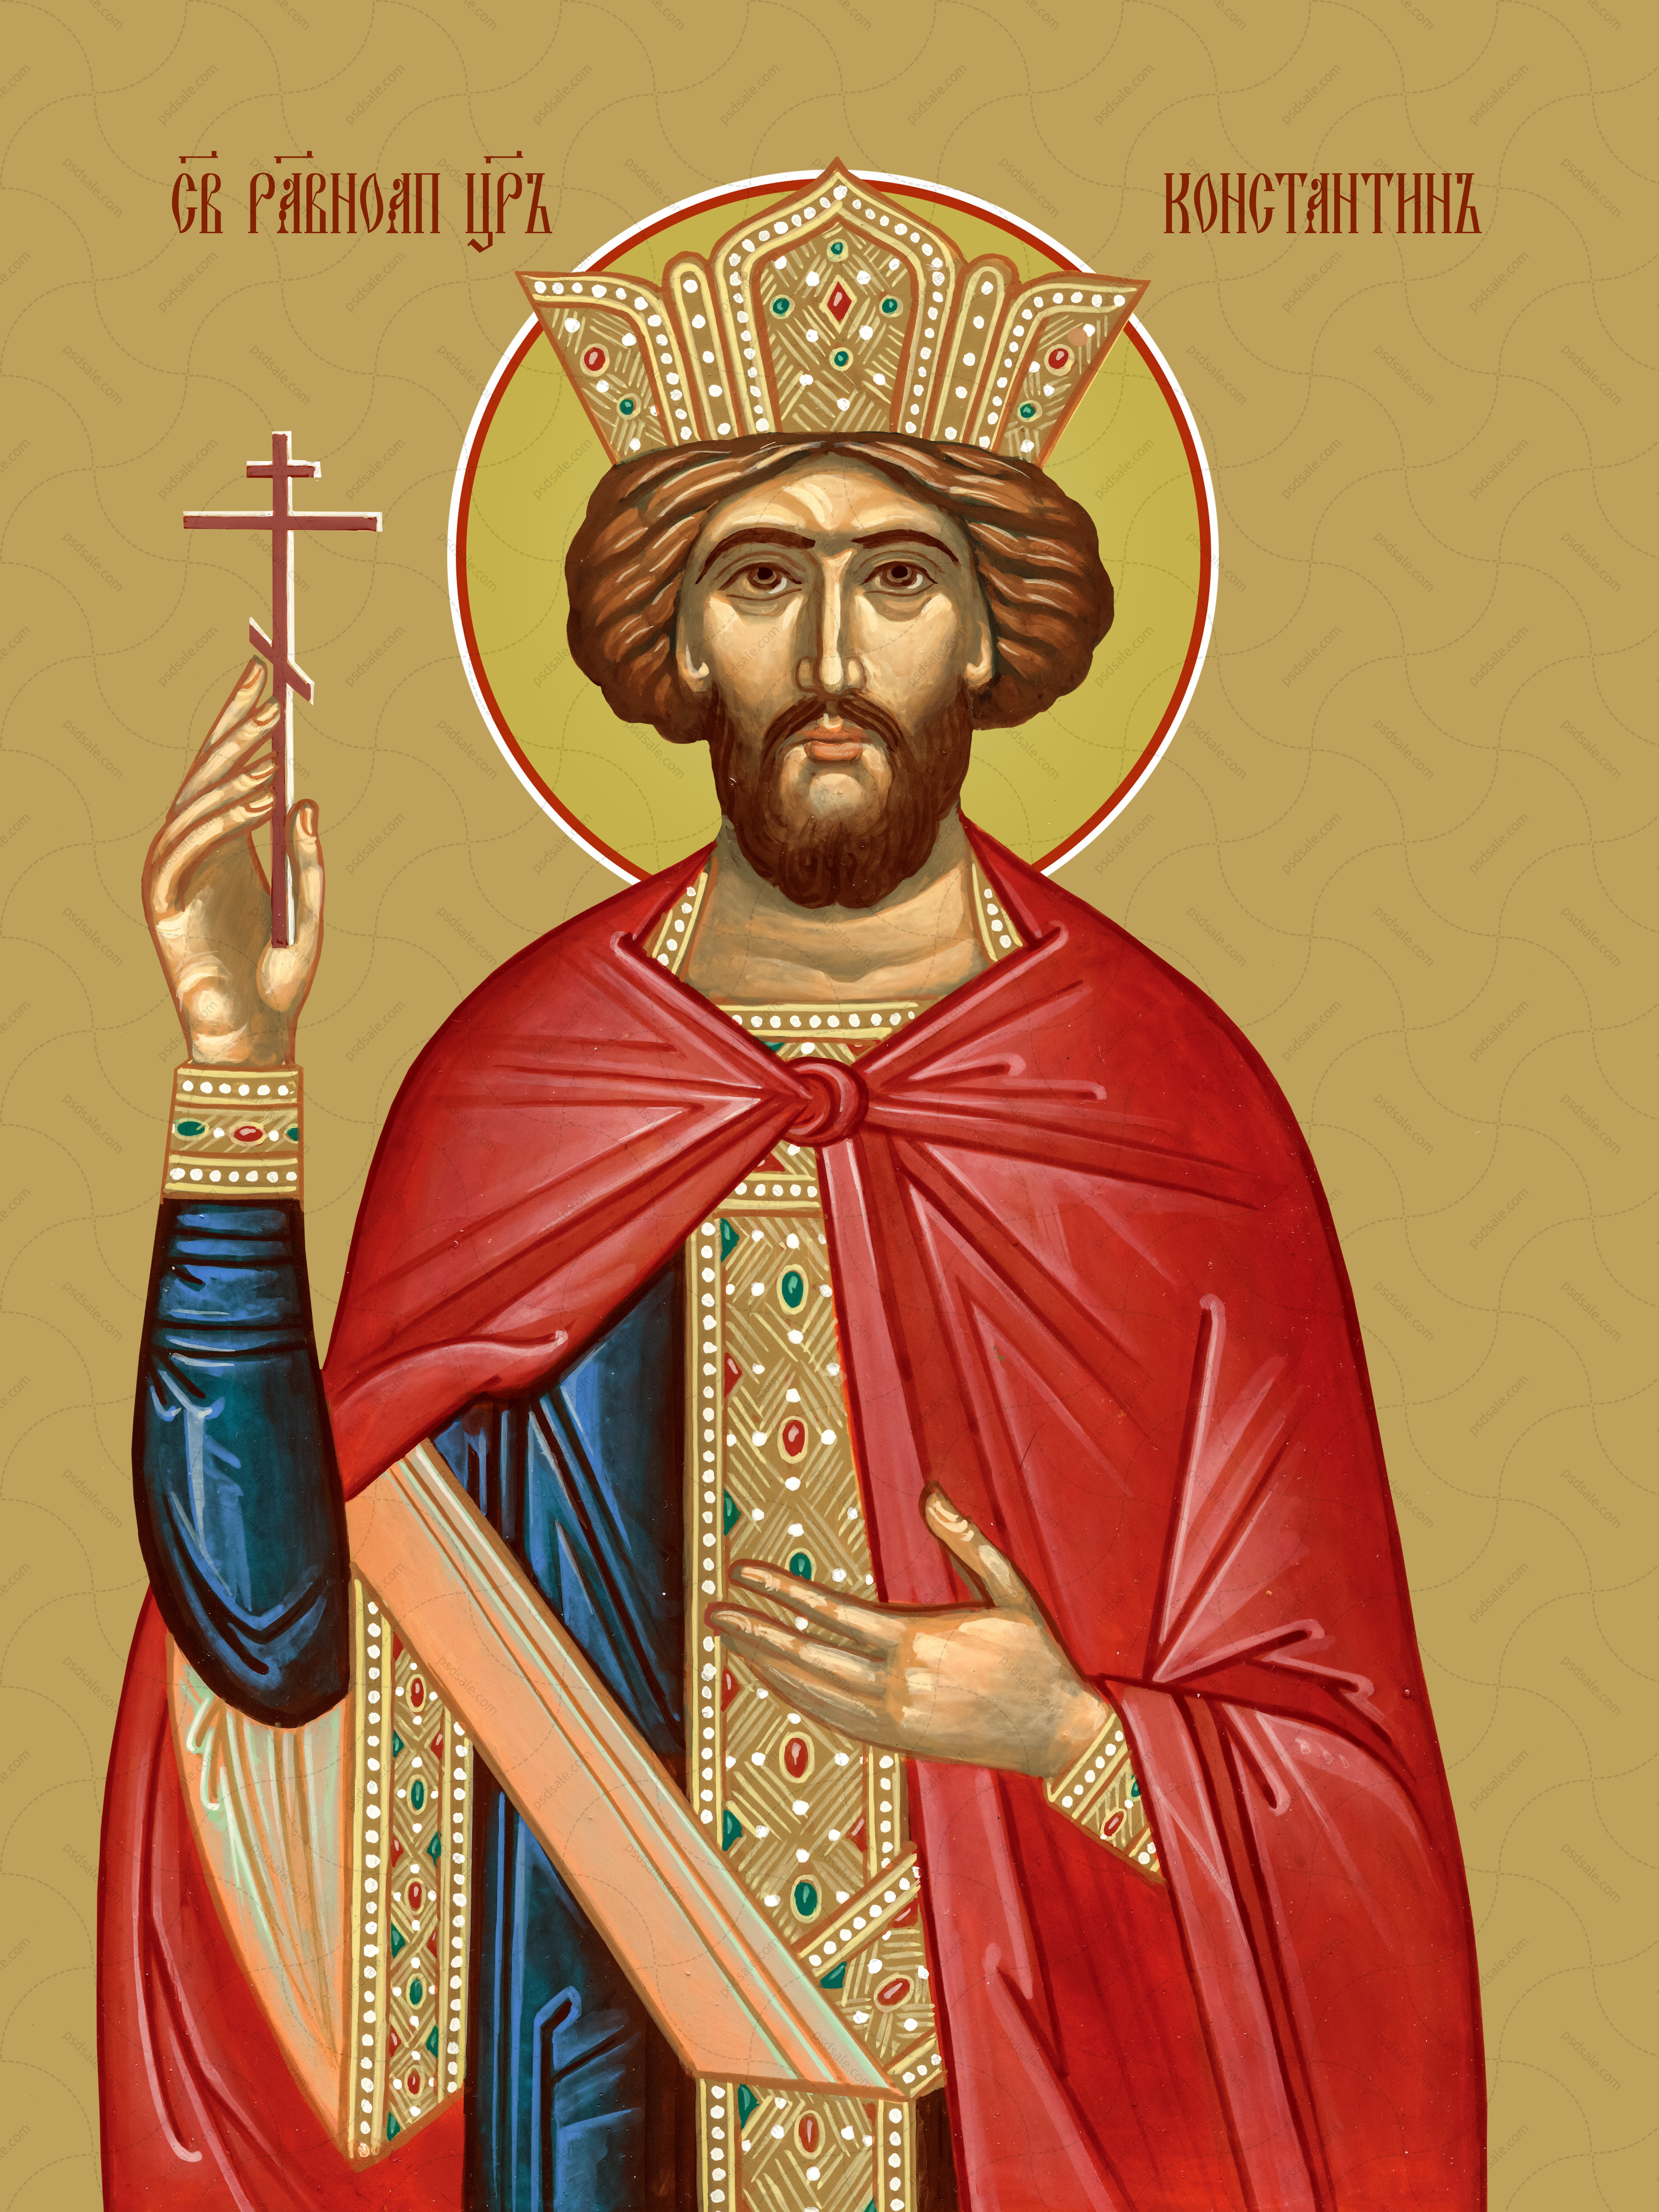 Святой алексей московский и константин икона фото